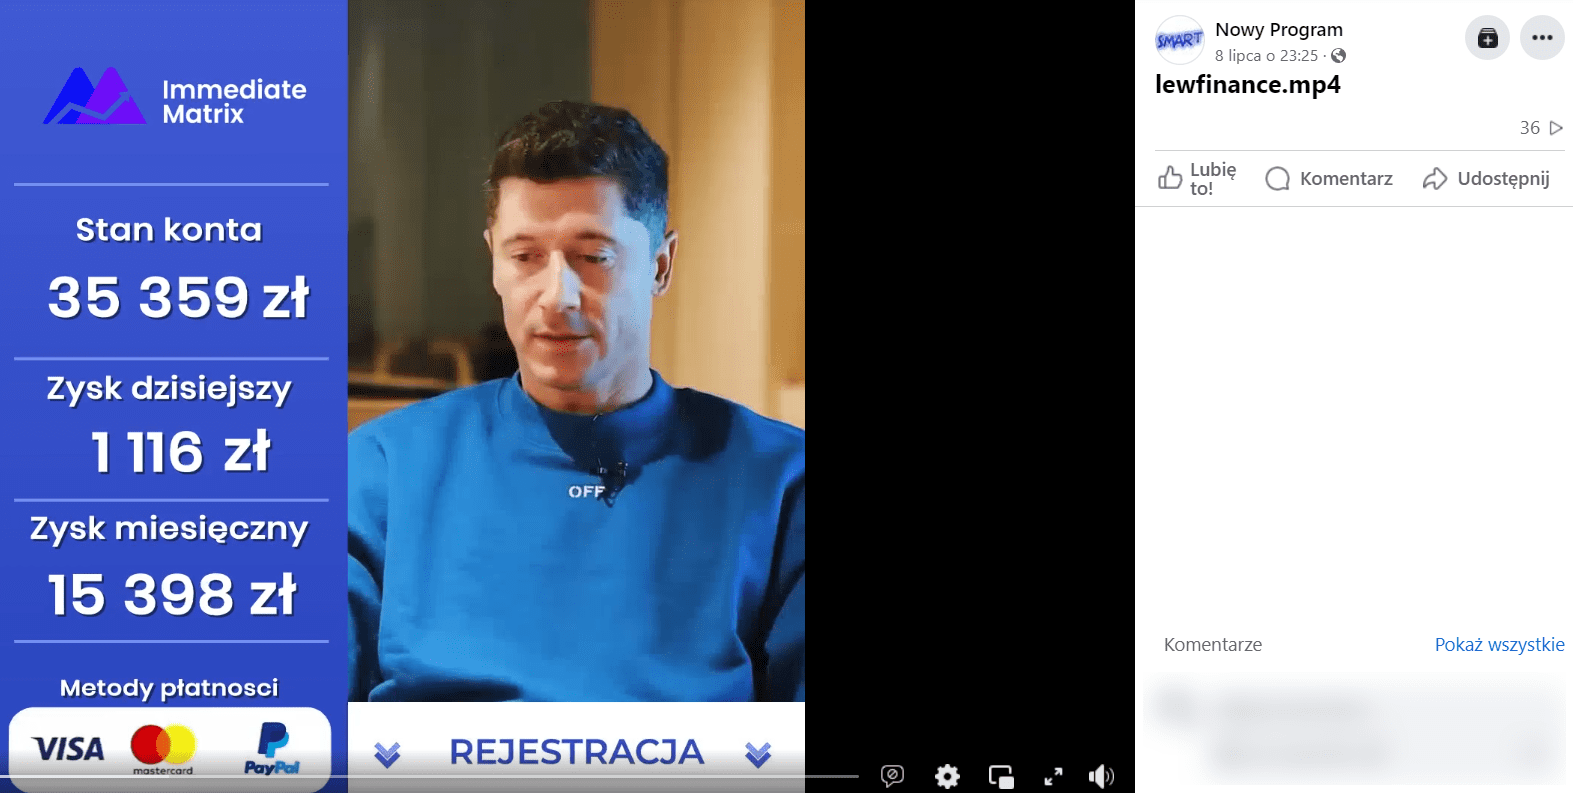 Zrzut ekranu nagrania z Facebooka. Widzimy na nim piłkarza Roberta Lewandowskiego oraz informacje dotyczące rzekomej platformy inwestycyjnej o nazwie: „Immediate Matrix”. 